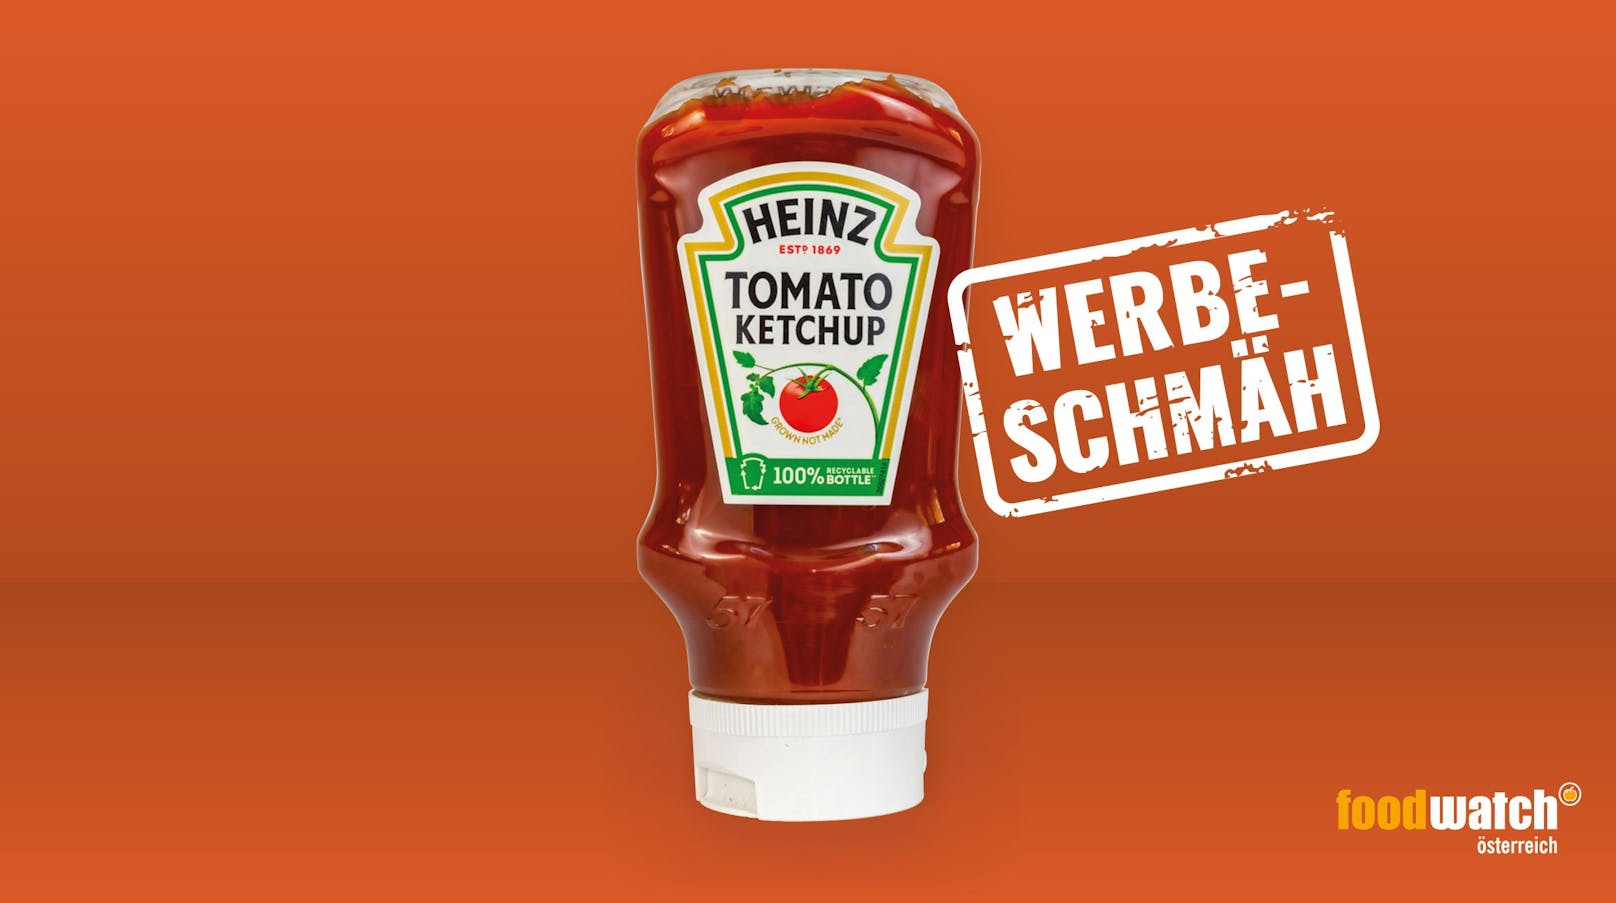 <strong>Heinz Tomaten Ketchup</strong> - täuscht mit grünem Etikett Nachhaltigkeit vor: Das Heinz Tomaten Ketchup lockt umweltbewusste Konsument*innen mit dem Hinweis „100% Recyclable Bottle". Der grüne Schriftzug soll das Produkt wohl zusätzlich nachhaltig erscheinen lassen. Die Realität: Beim Heinz Ketchup handelt es sich um ganz normales Tomaten Ketchup in einer Plastikflasche. Die ist recycelbar - wie viele andere Ketchupflaschen auch.